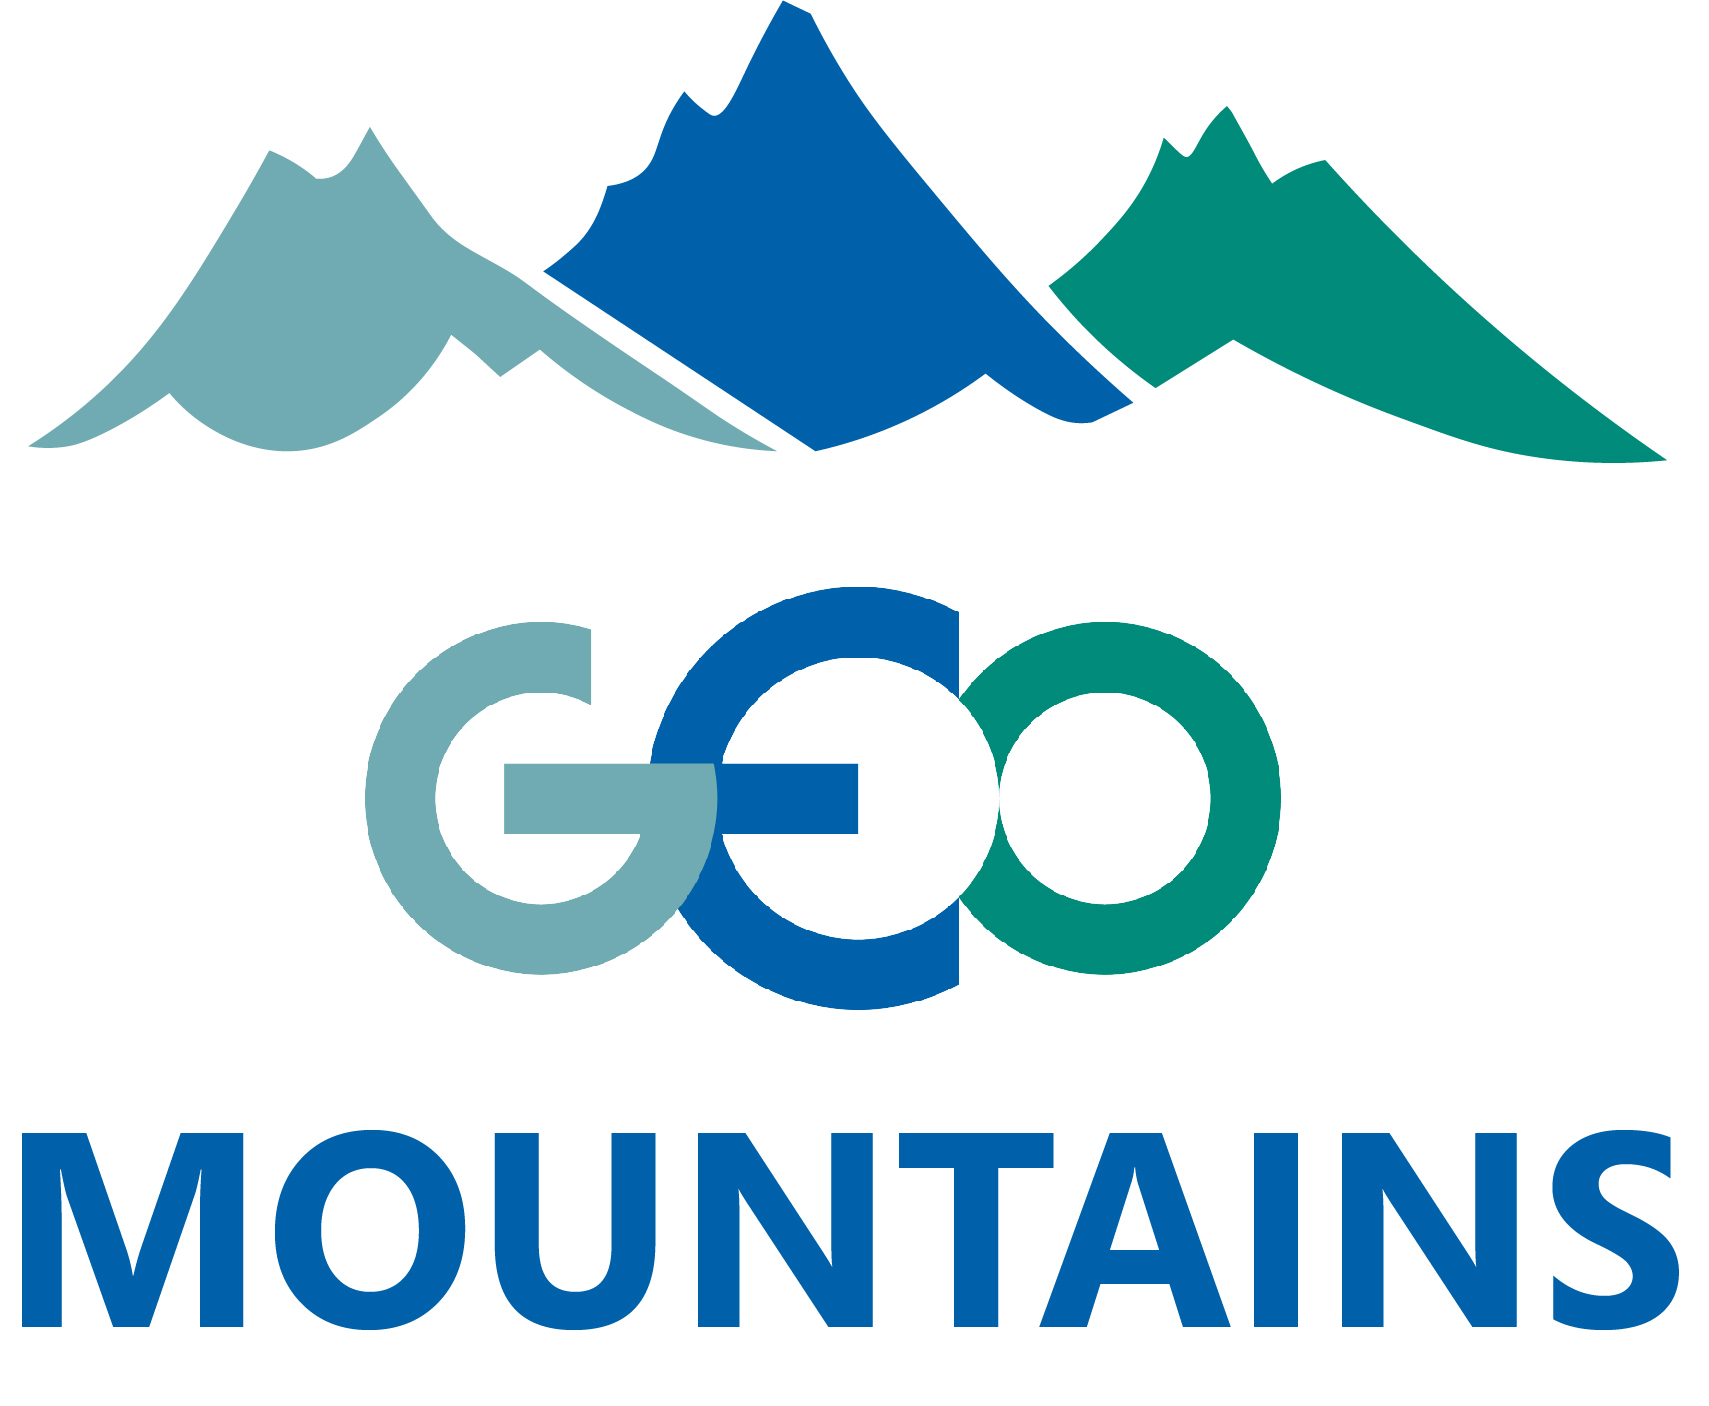 geo mountains logo